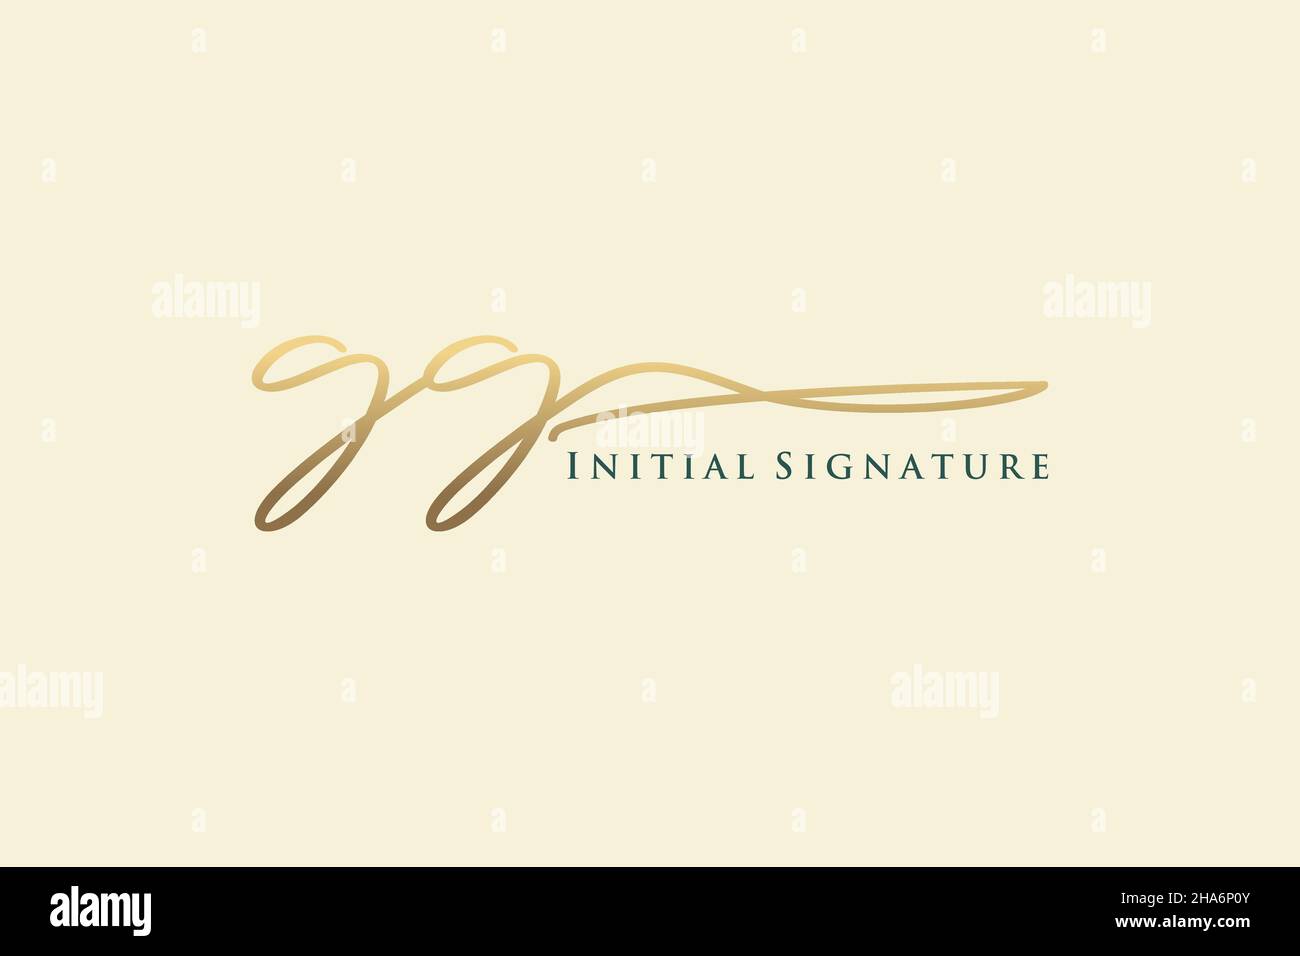 GG lettre Signature logo Template Design élégant logo.Illustration du vecteur de lettrage calligraphique dessiné à la main. Illustration de Vecteur